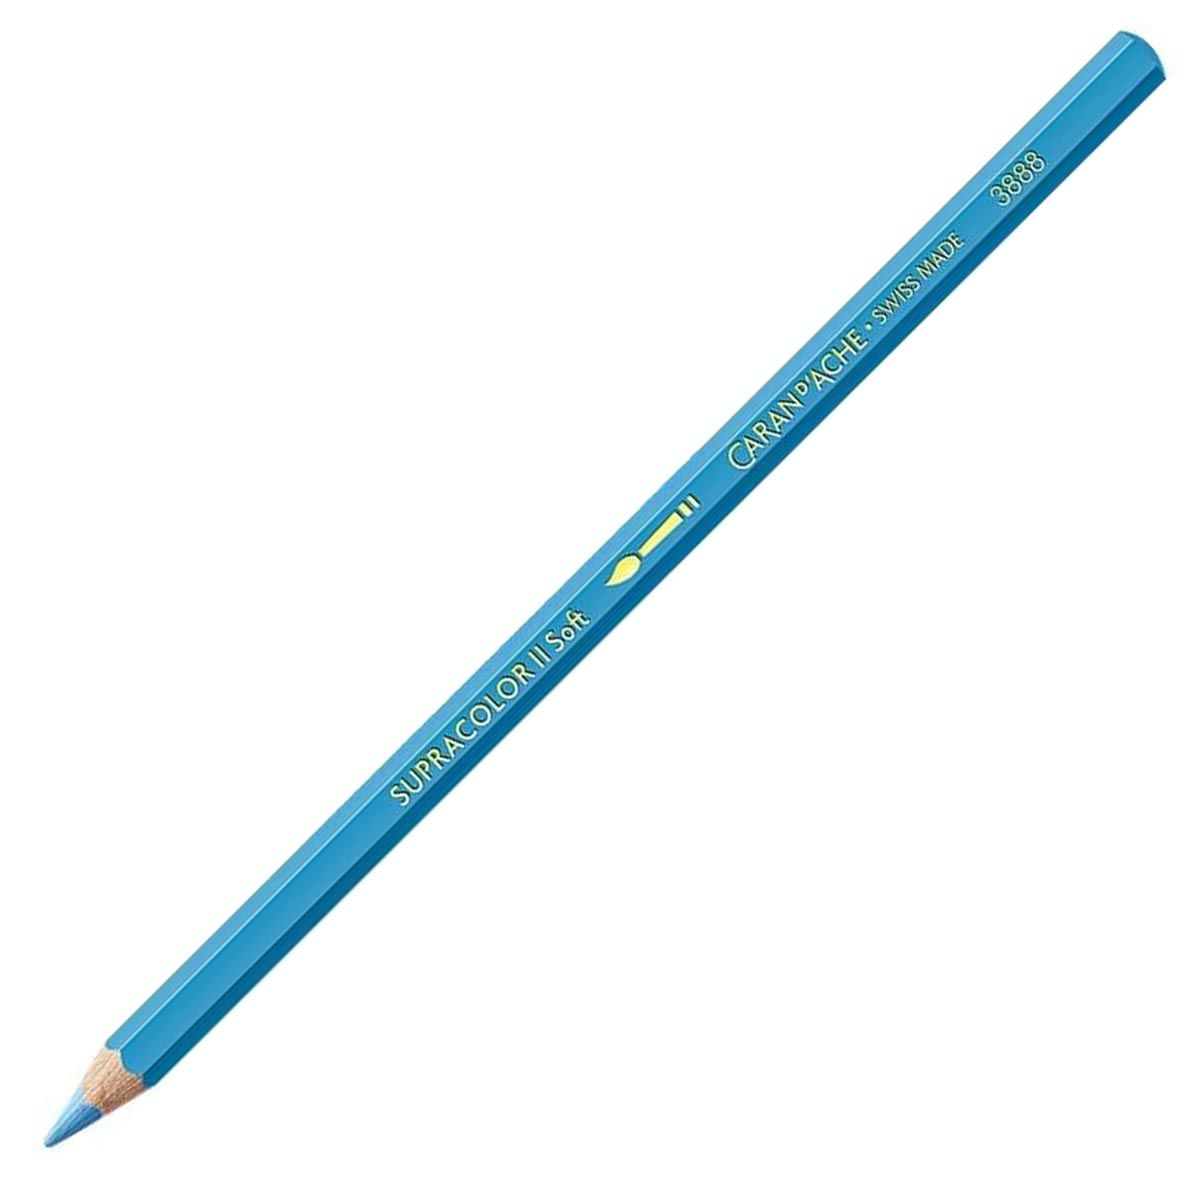 Caran d'Ache Supracolor ll Soft Aquarelle Pencil - Pastel Blue 151